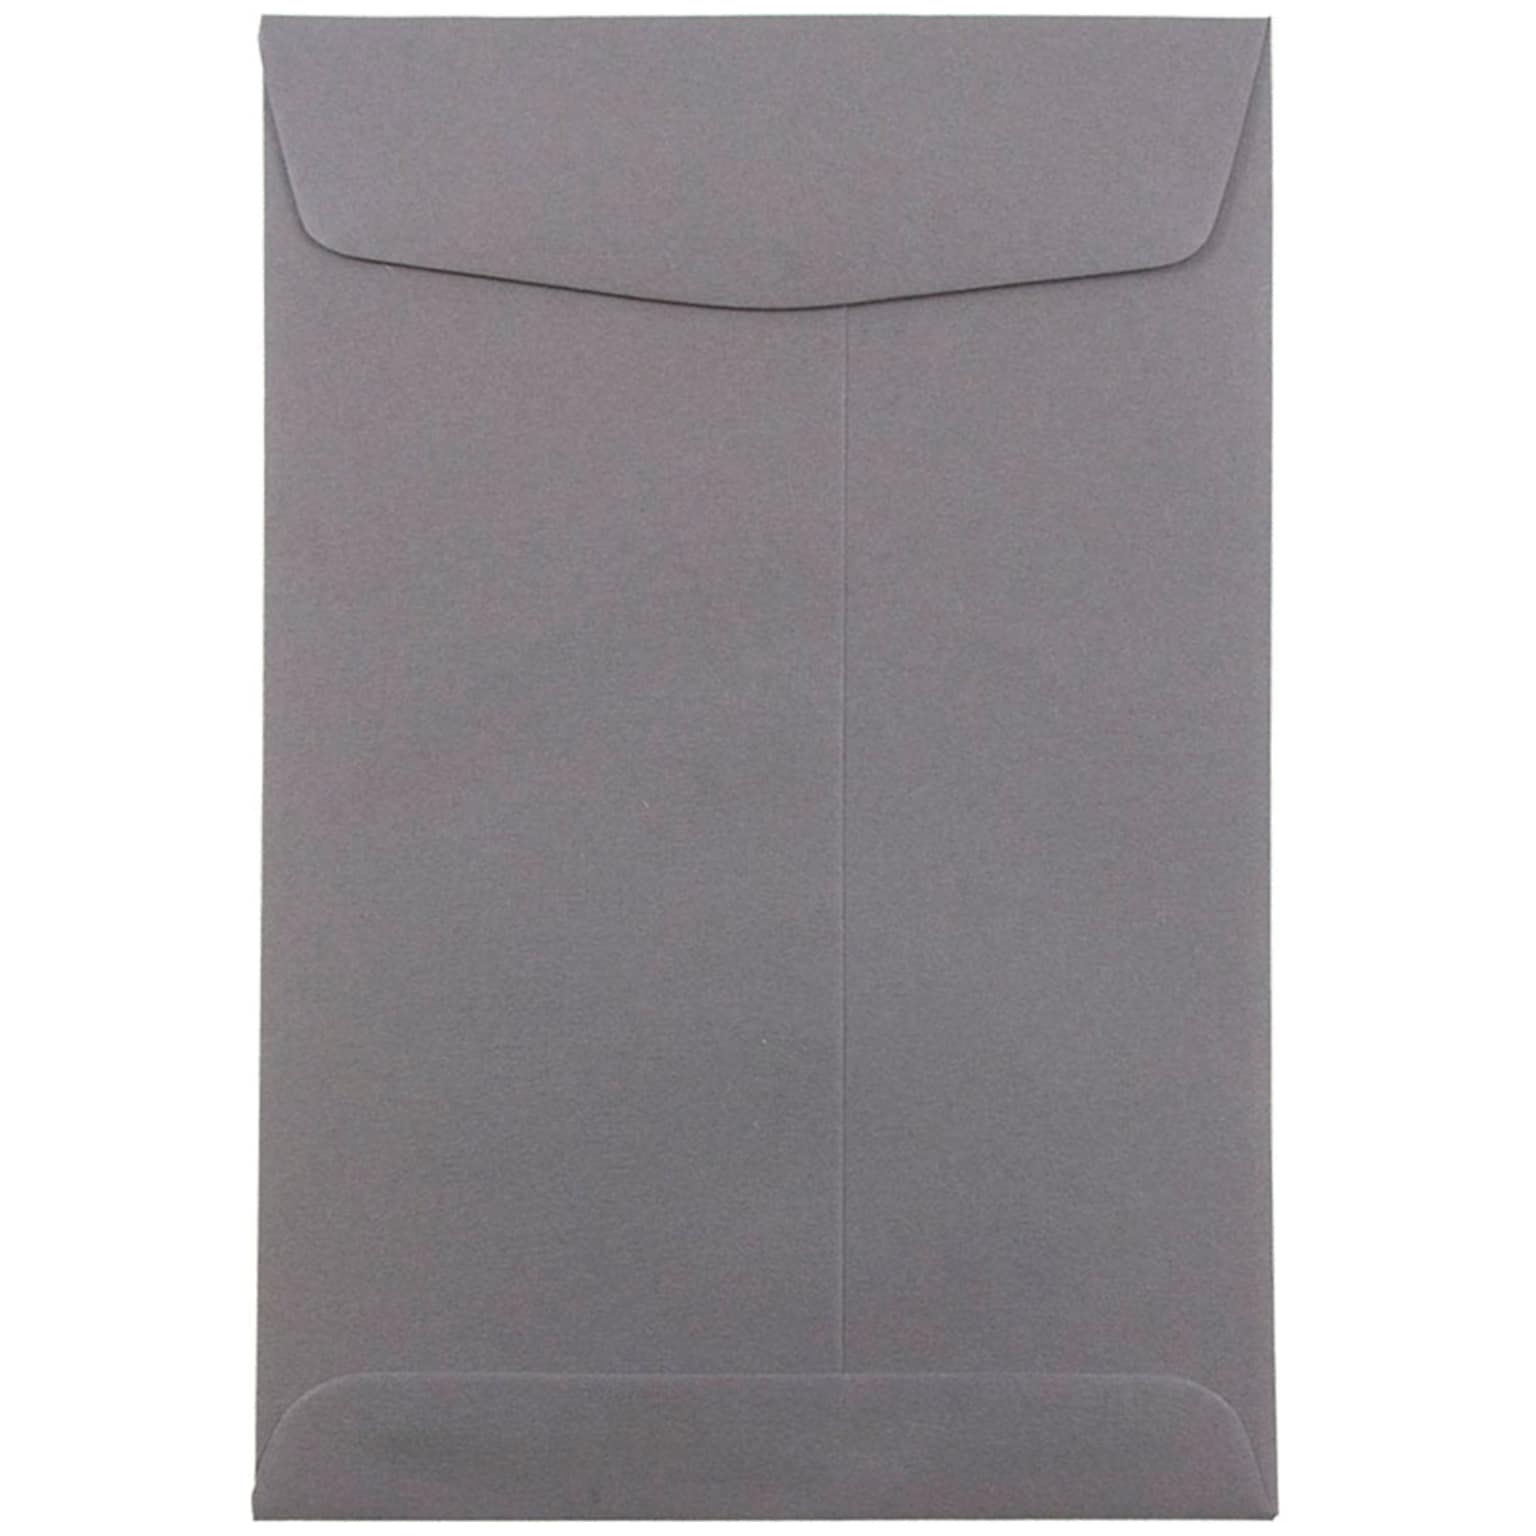 JAM Paper 6 x 9 Open End Catalog Envelopes, Dark Grey, 50/Pack (51285796i)